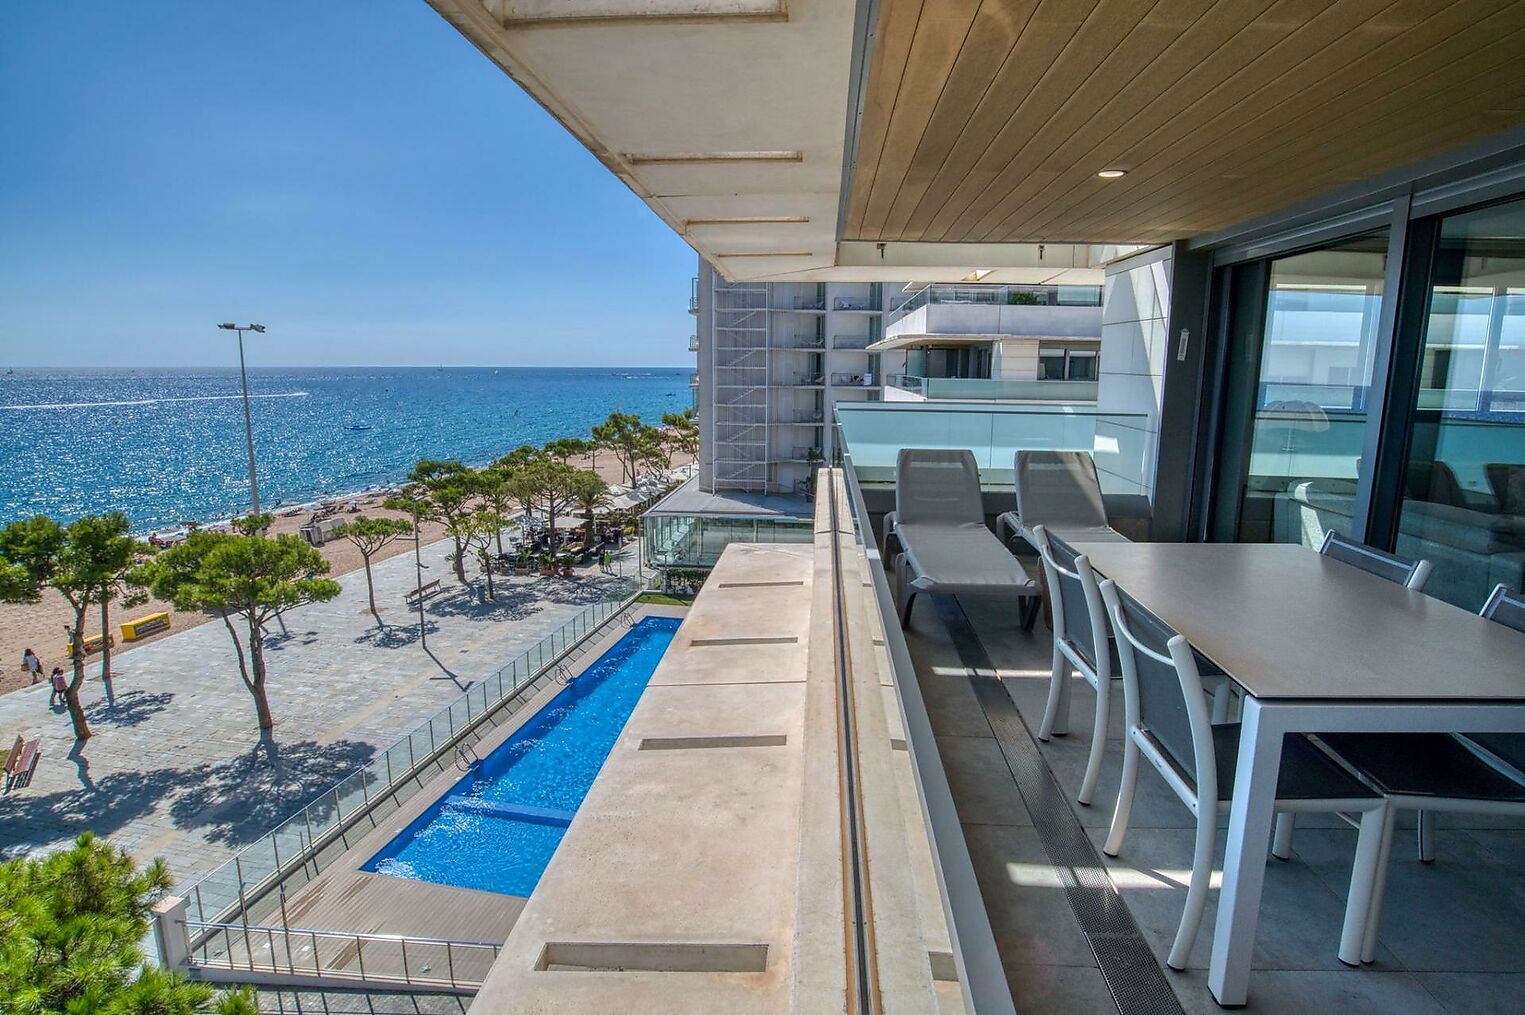 Precioso apartamento moderno con increíbles vistas al mar.